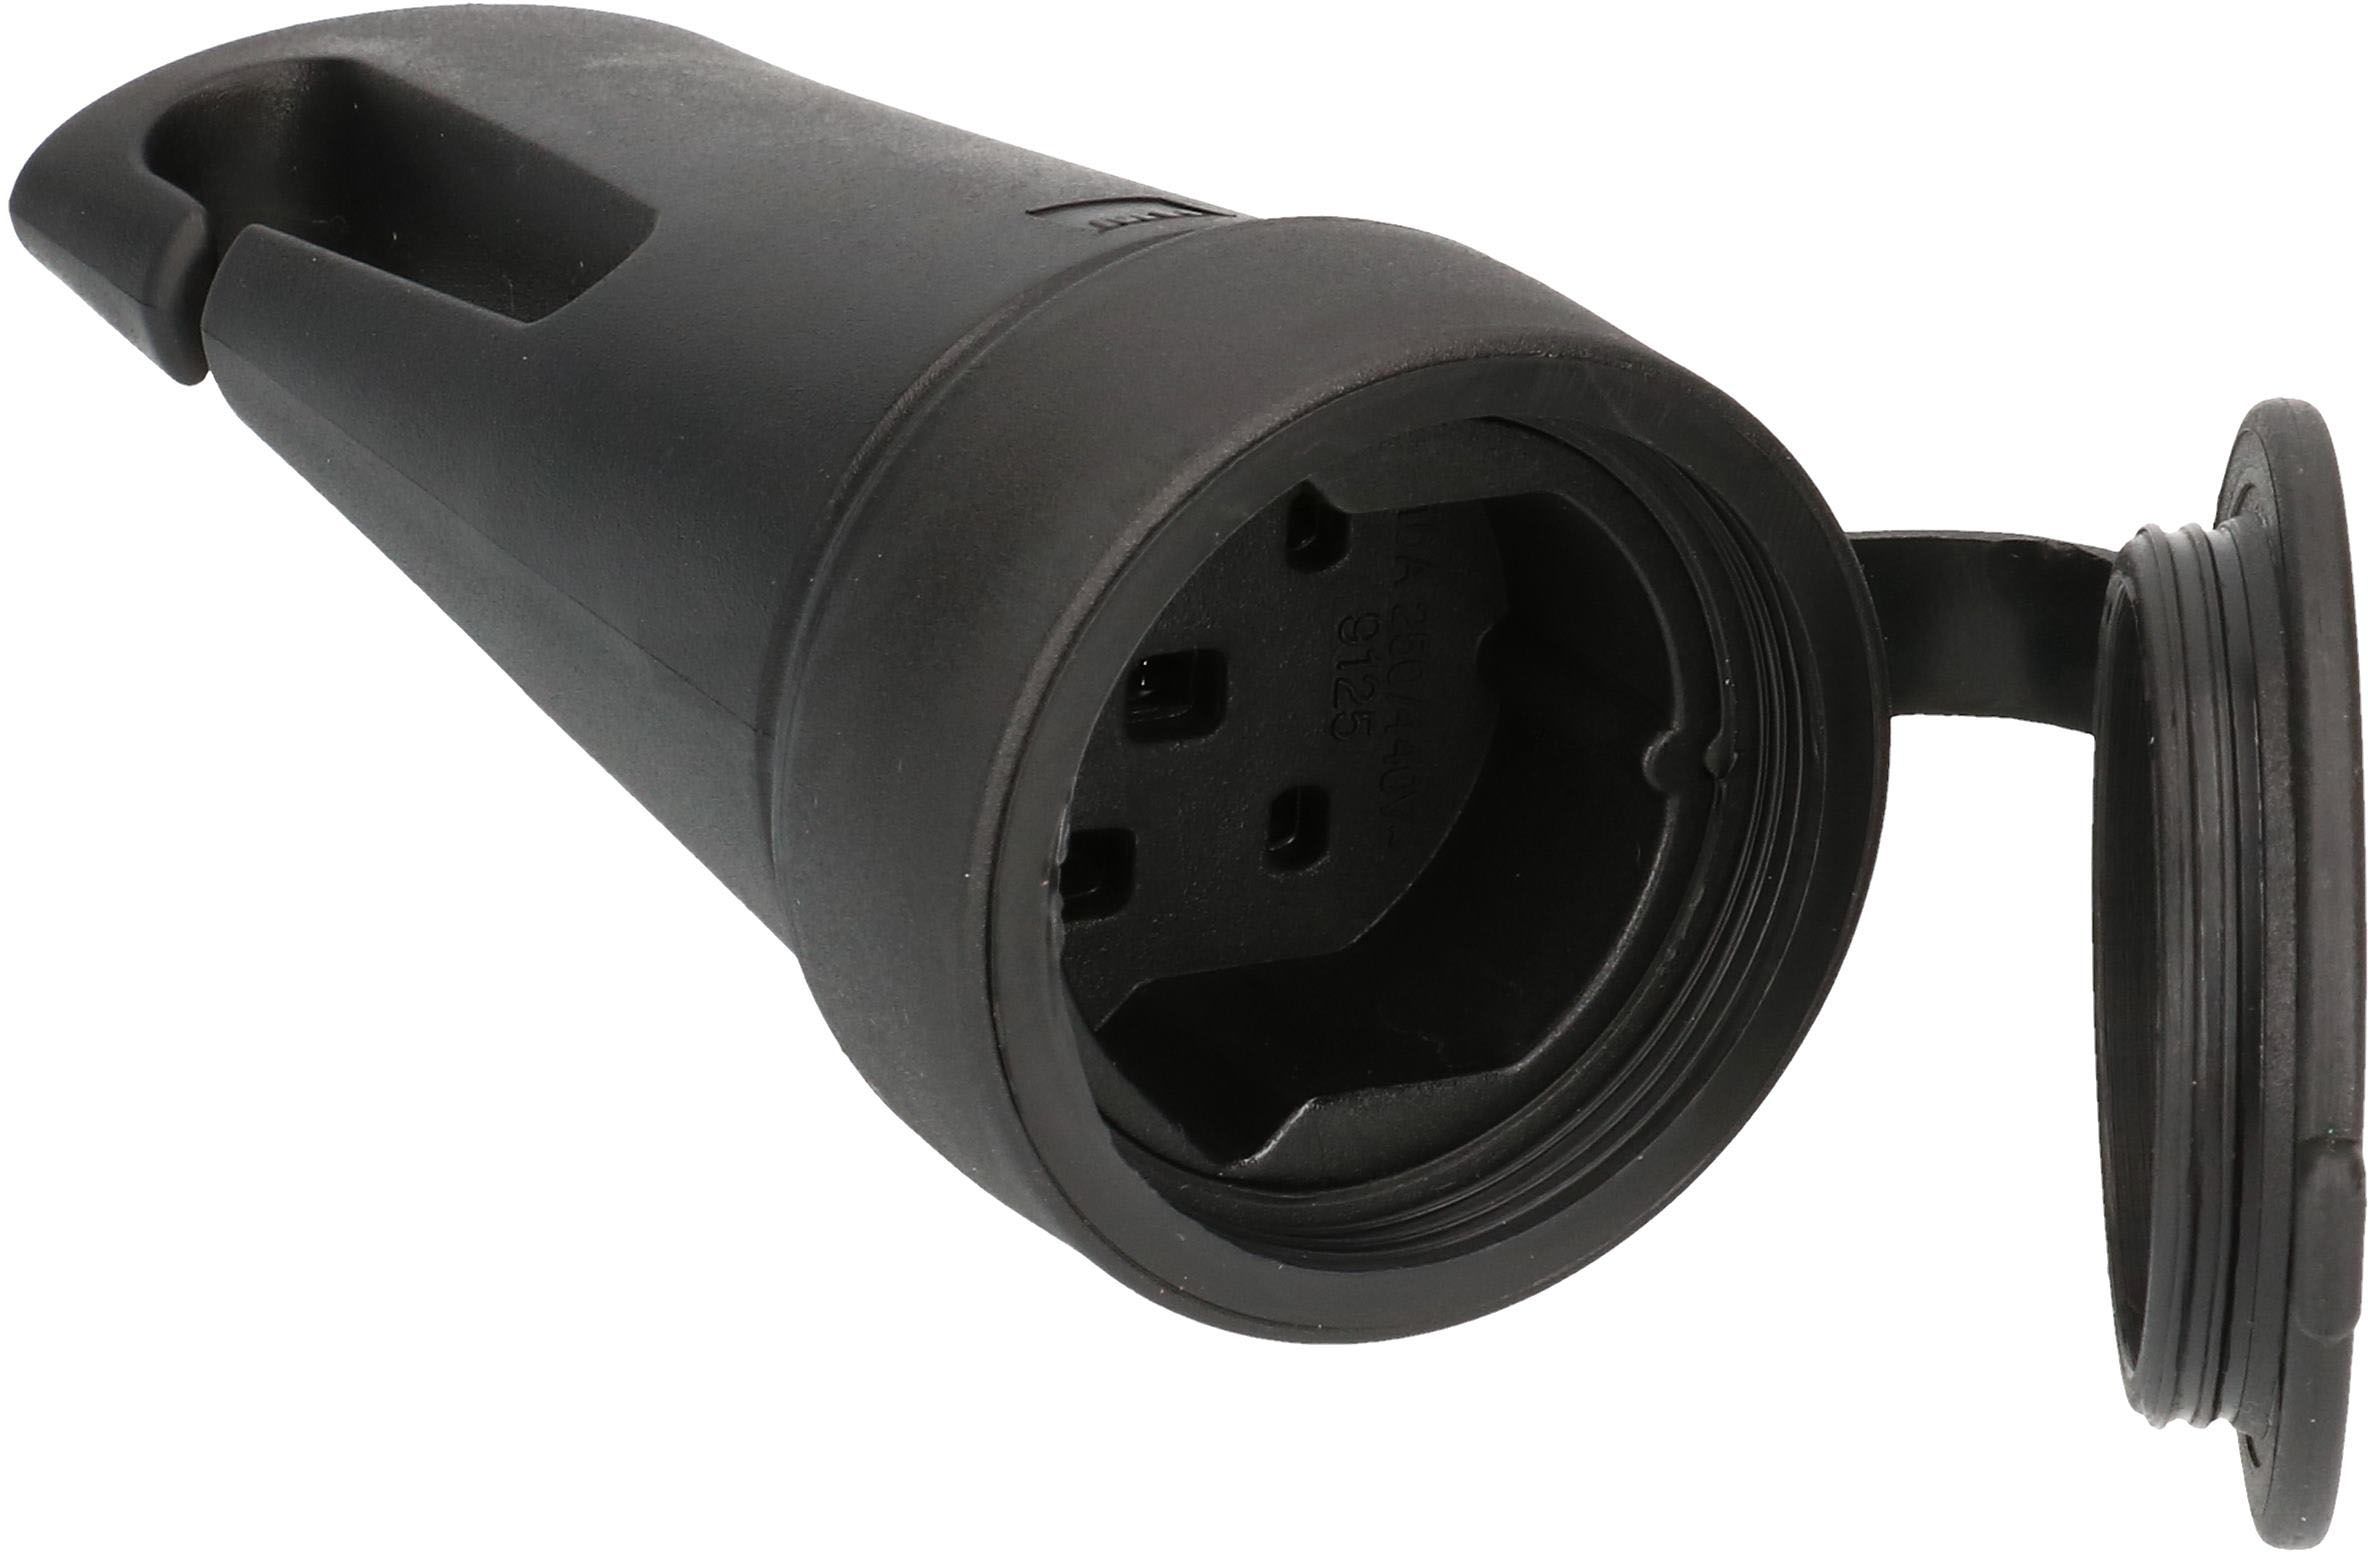 Rubber socket type25 3L+N+PE